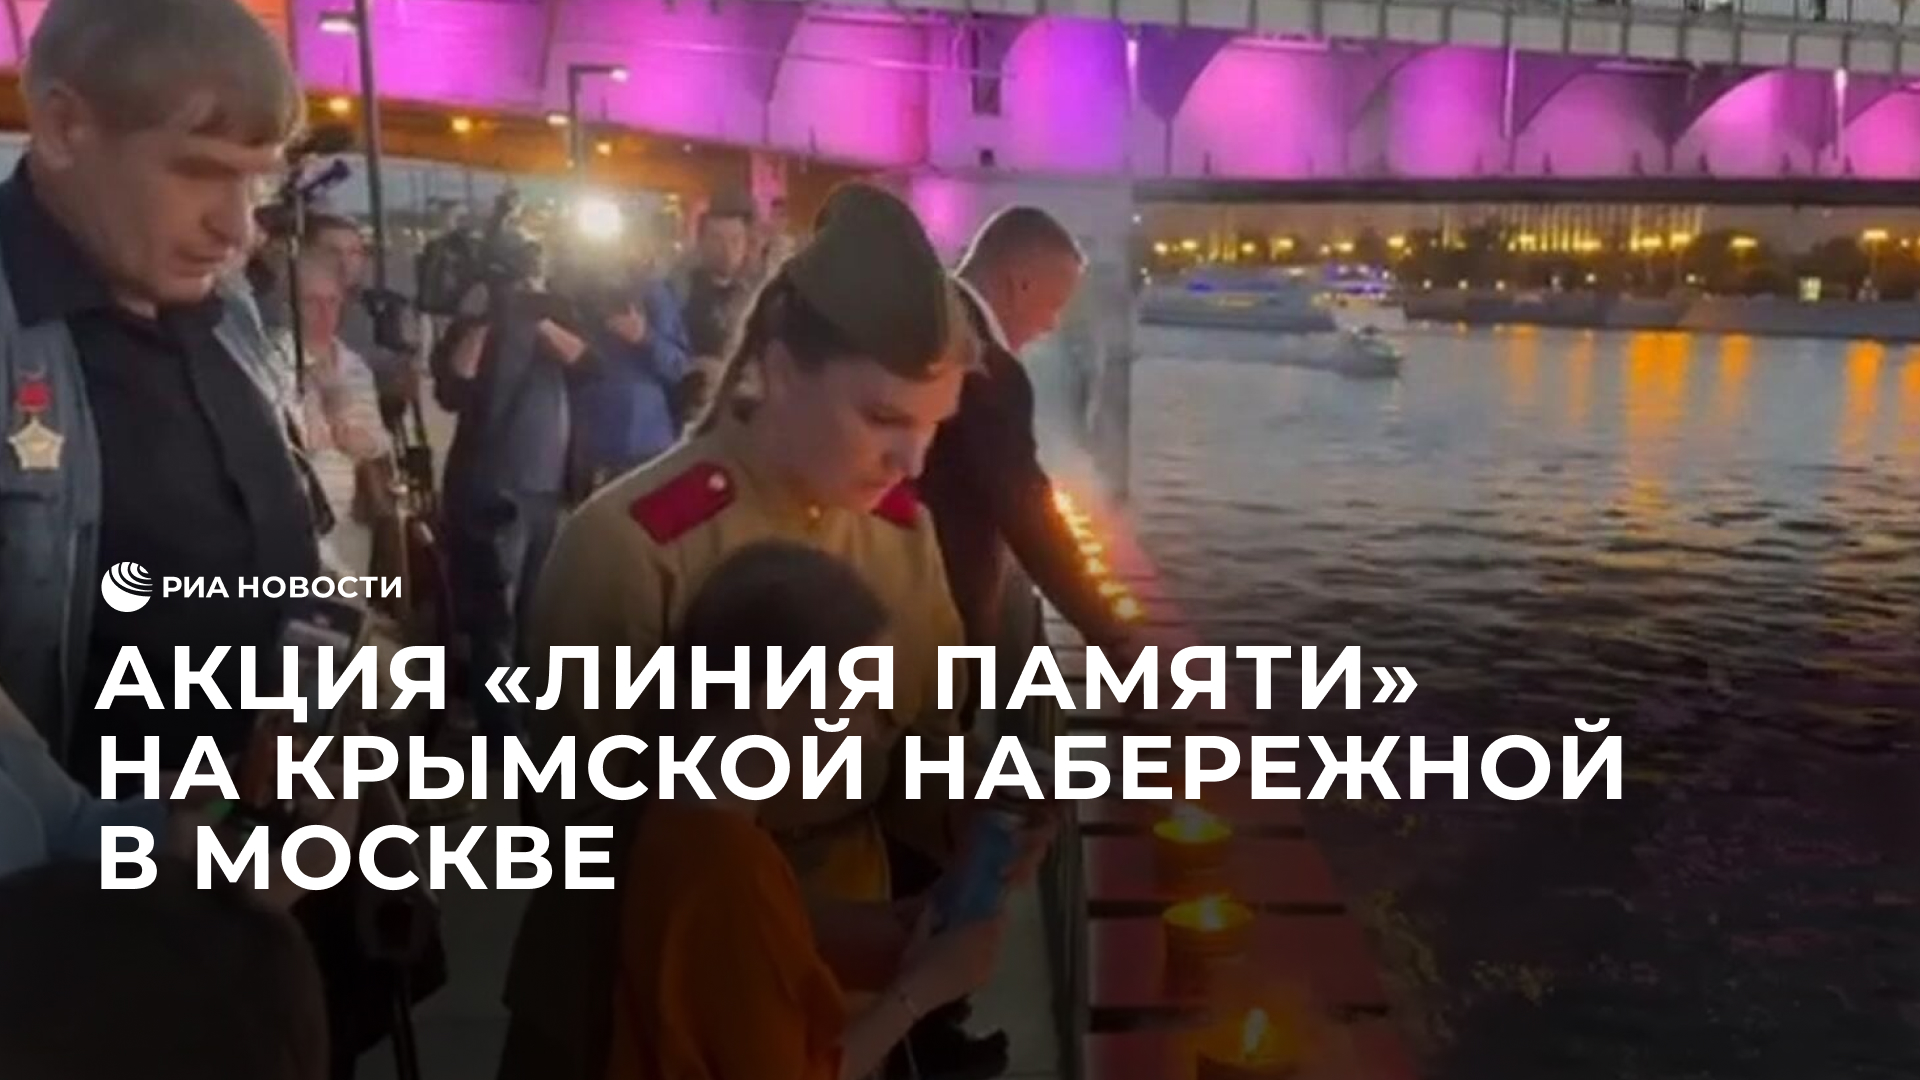 Акция "Линия памяти" на Крымской набережной в Москве